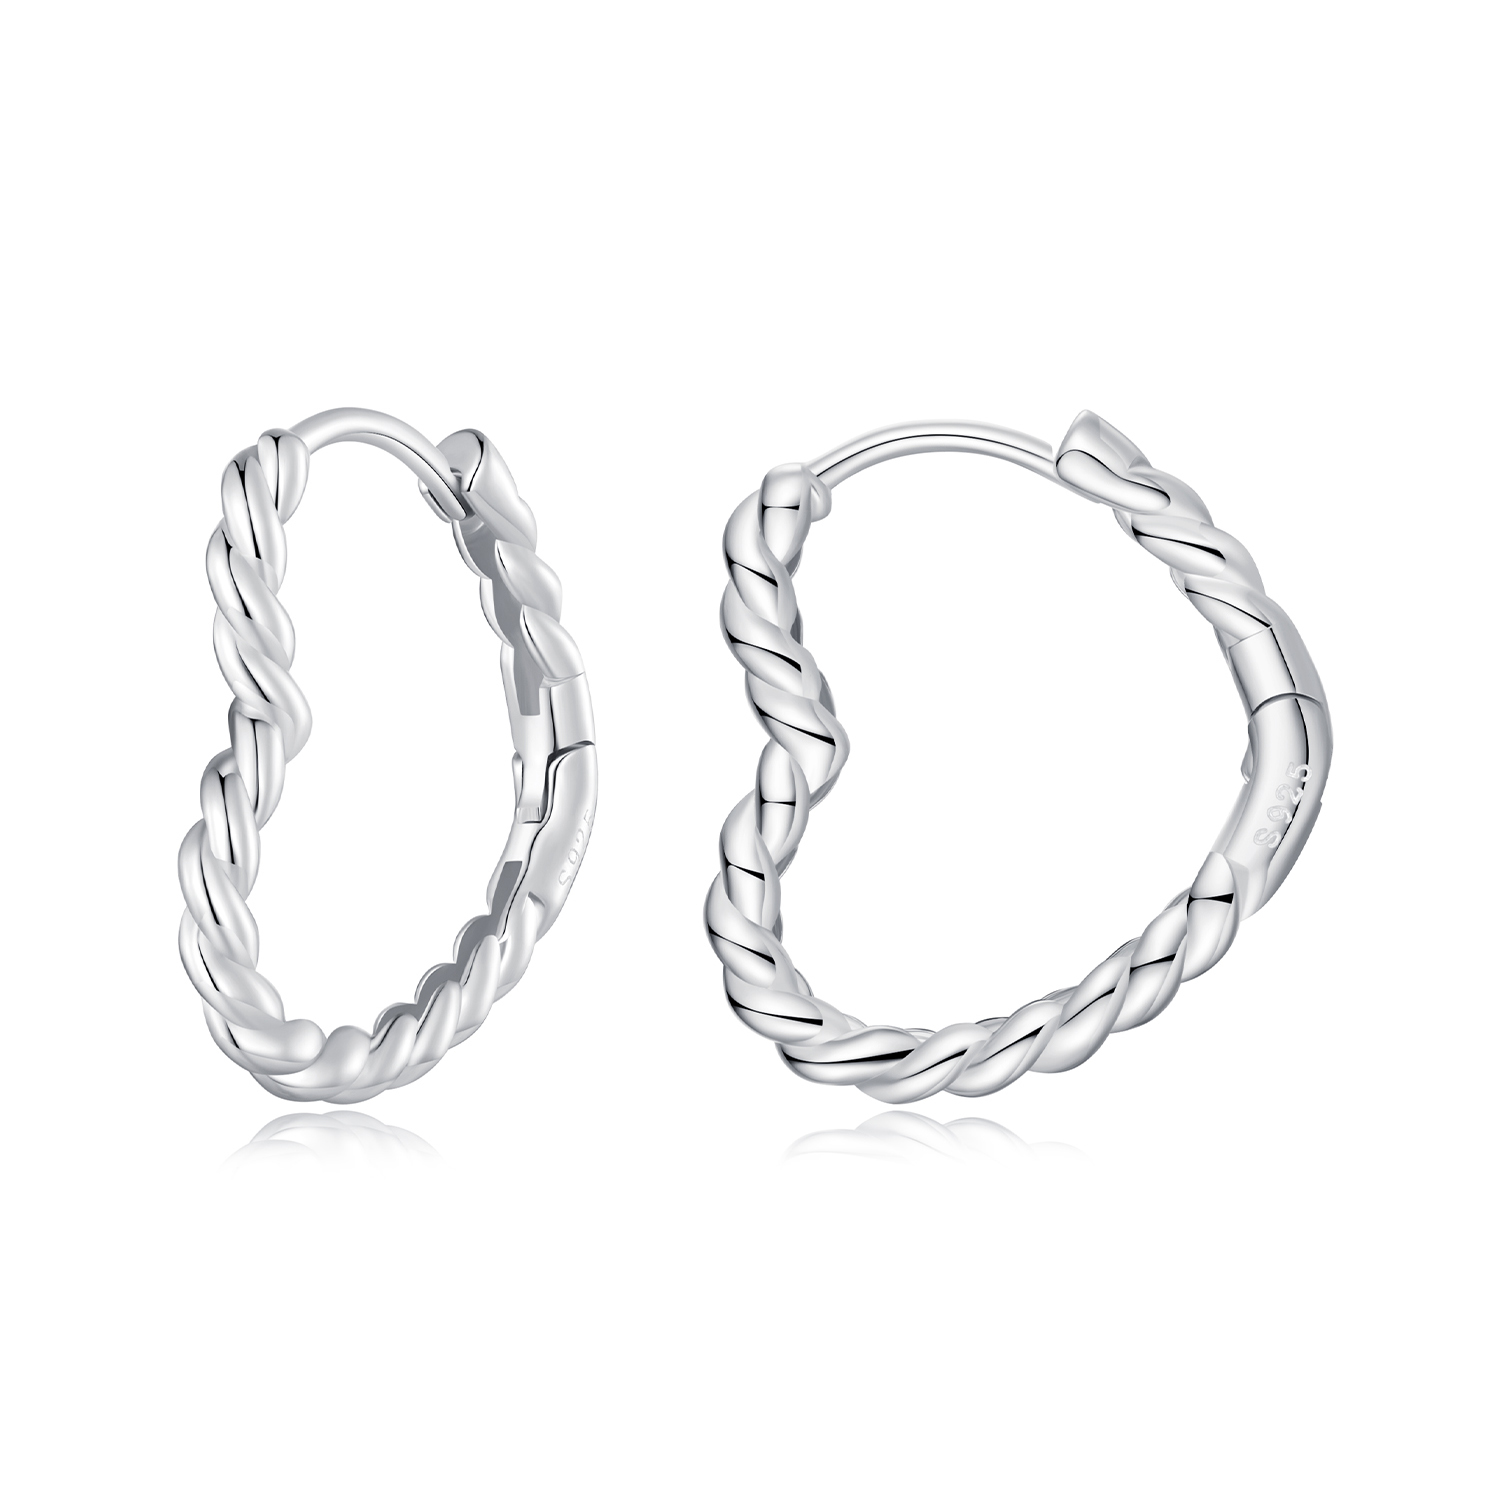 pandora style heart shaped hoops earrings sce1606